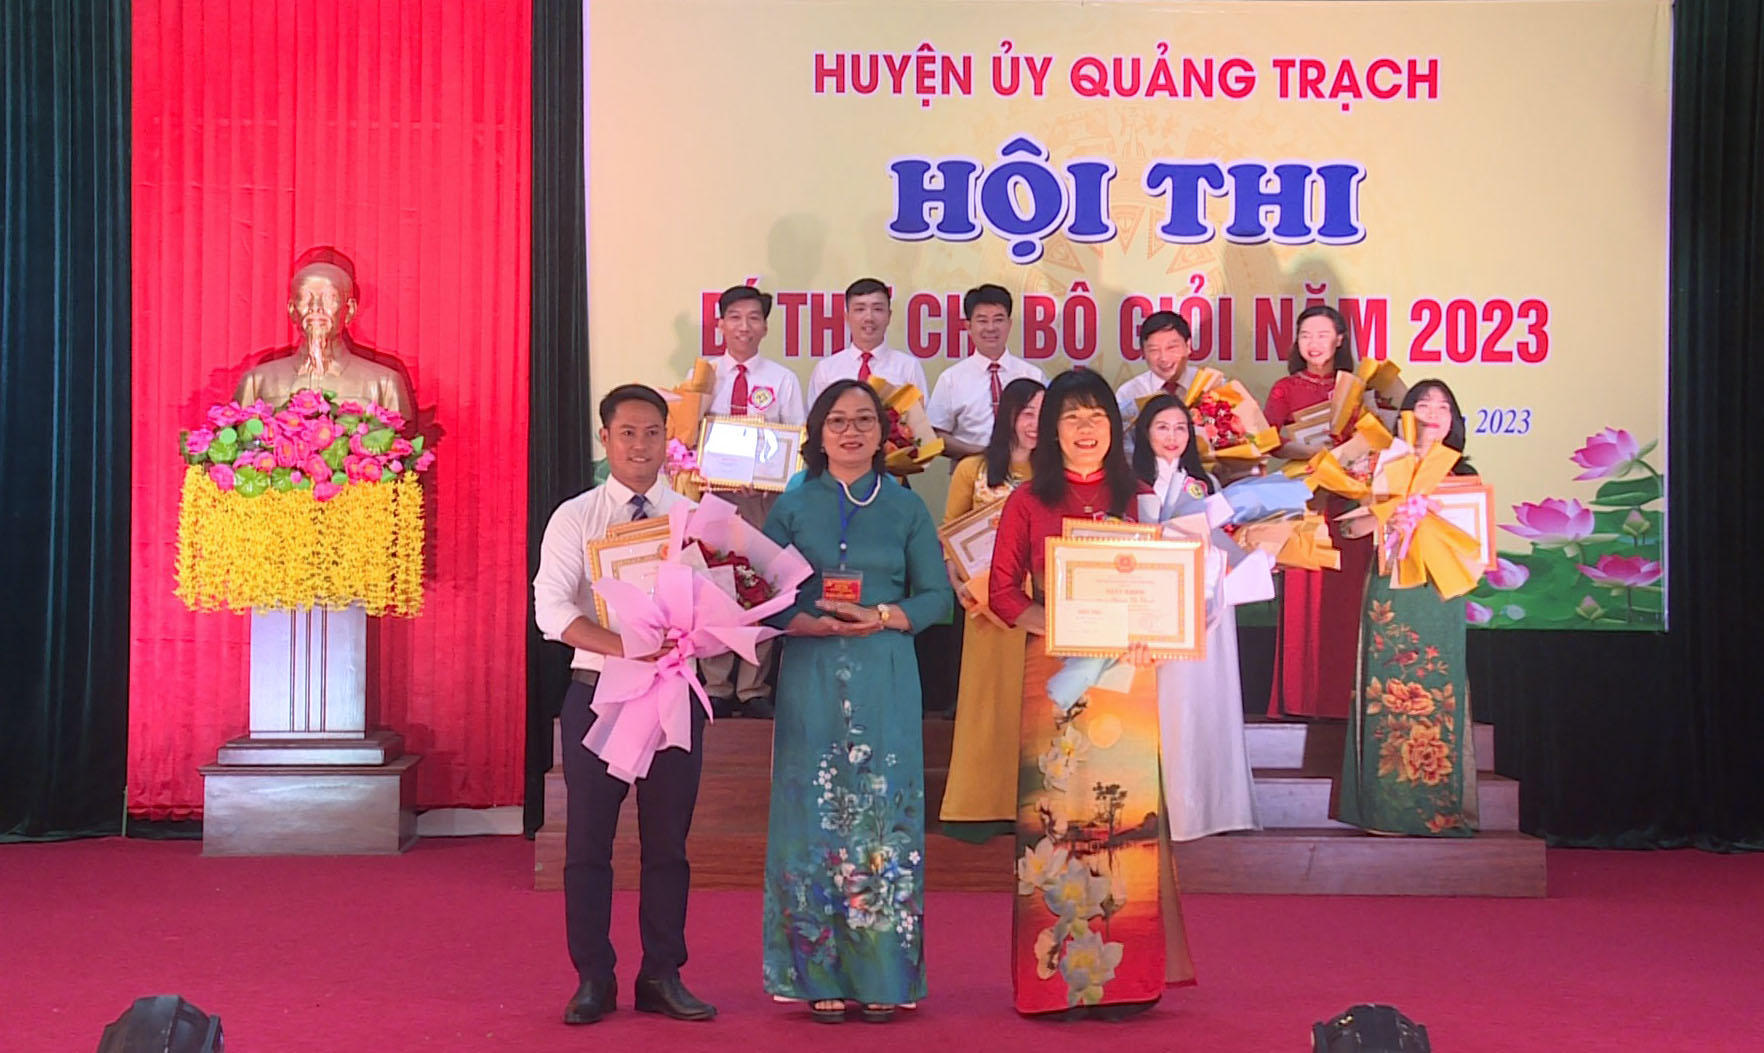 đồng chí Vũ Thị Mai, Phó Bí thư Thường trực Huyện uỷ Quảng Trạch trao giải cho 02 thí sinh đạt giải nhì